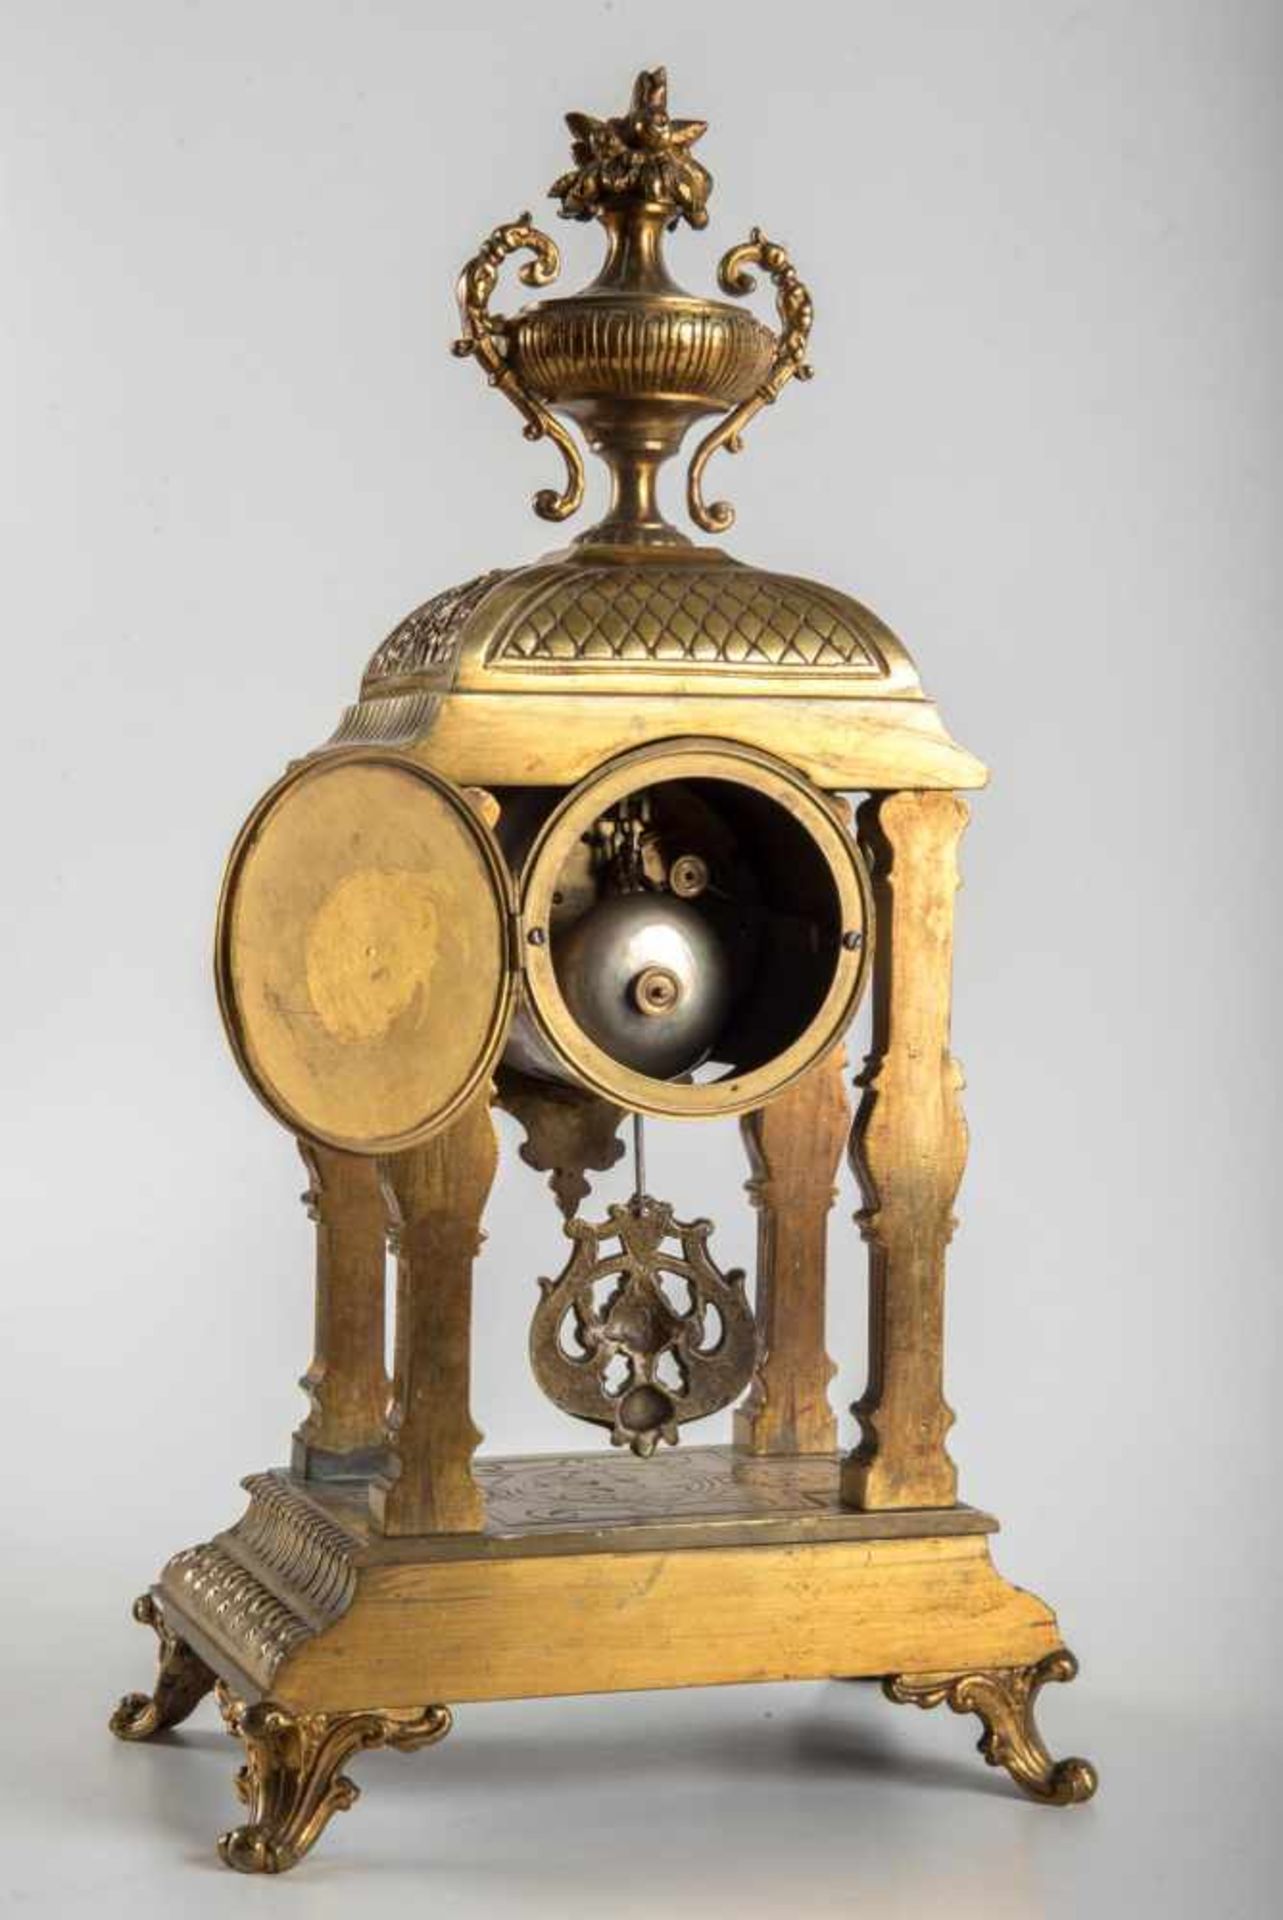 Kamin Pendule um 1860Messinggehäuse, Pendulenwerk mit Schlag auf Glocke, Zifferblatt bezeichnet H. - Bild 2 aus 2